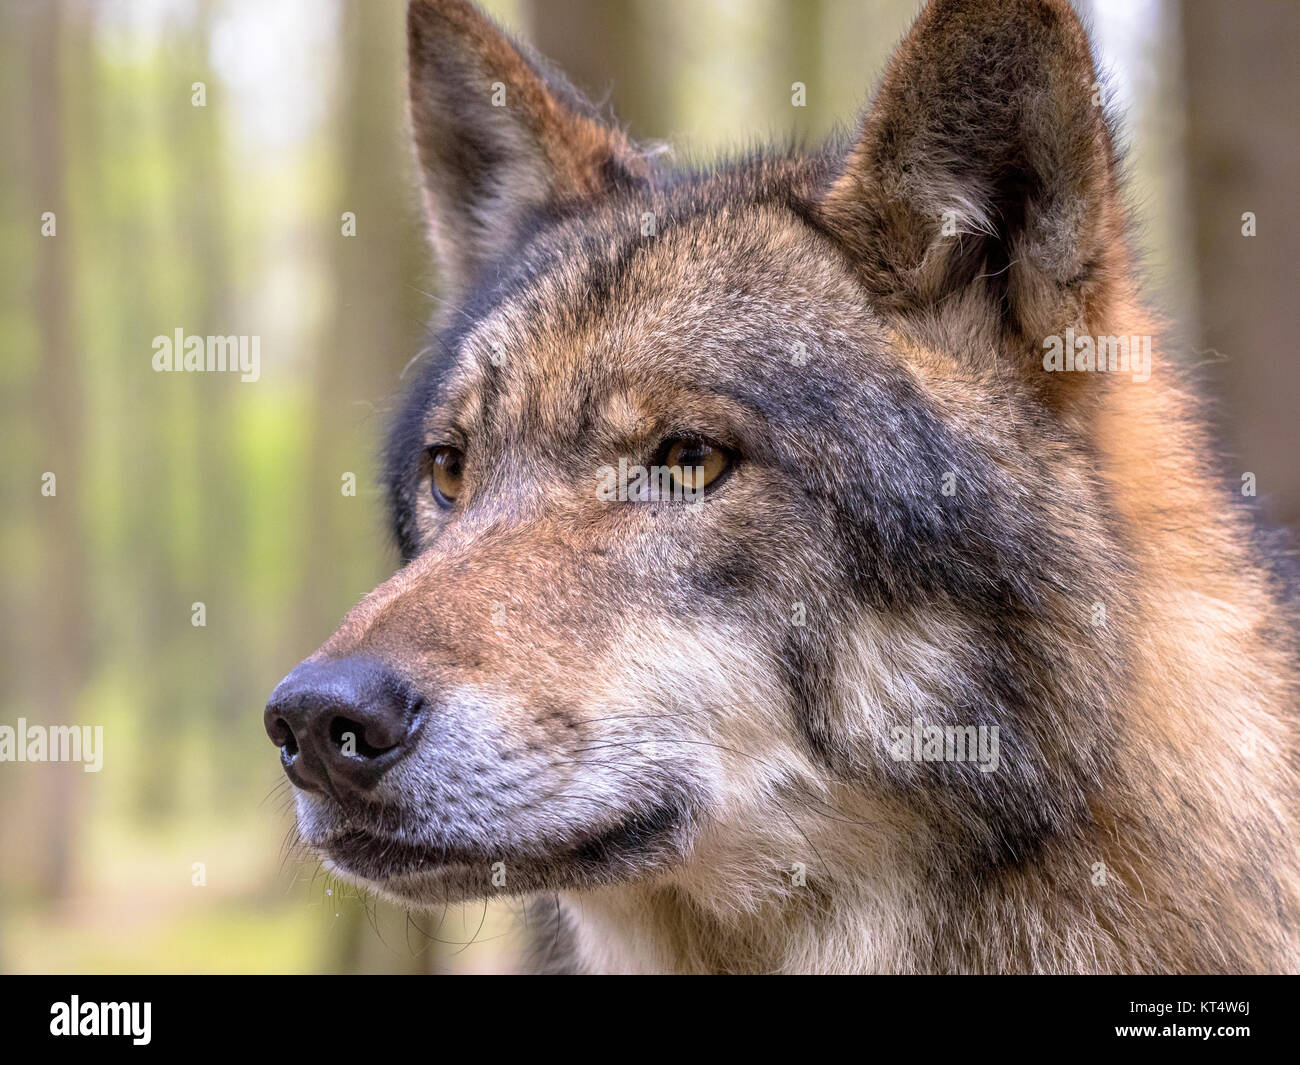 Europäische Wolf (Canis lupus) closeup Porträt im natürlichen Lebensraum Wald auf Seite Stockfoto